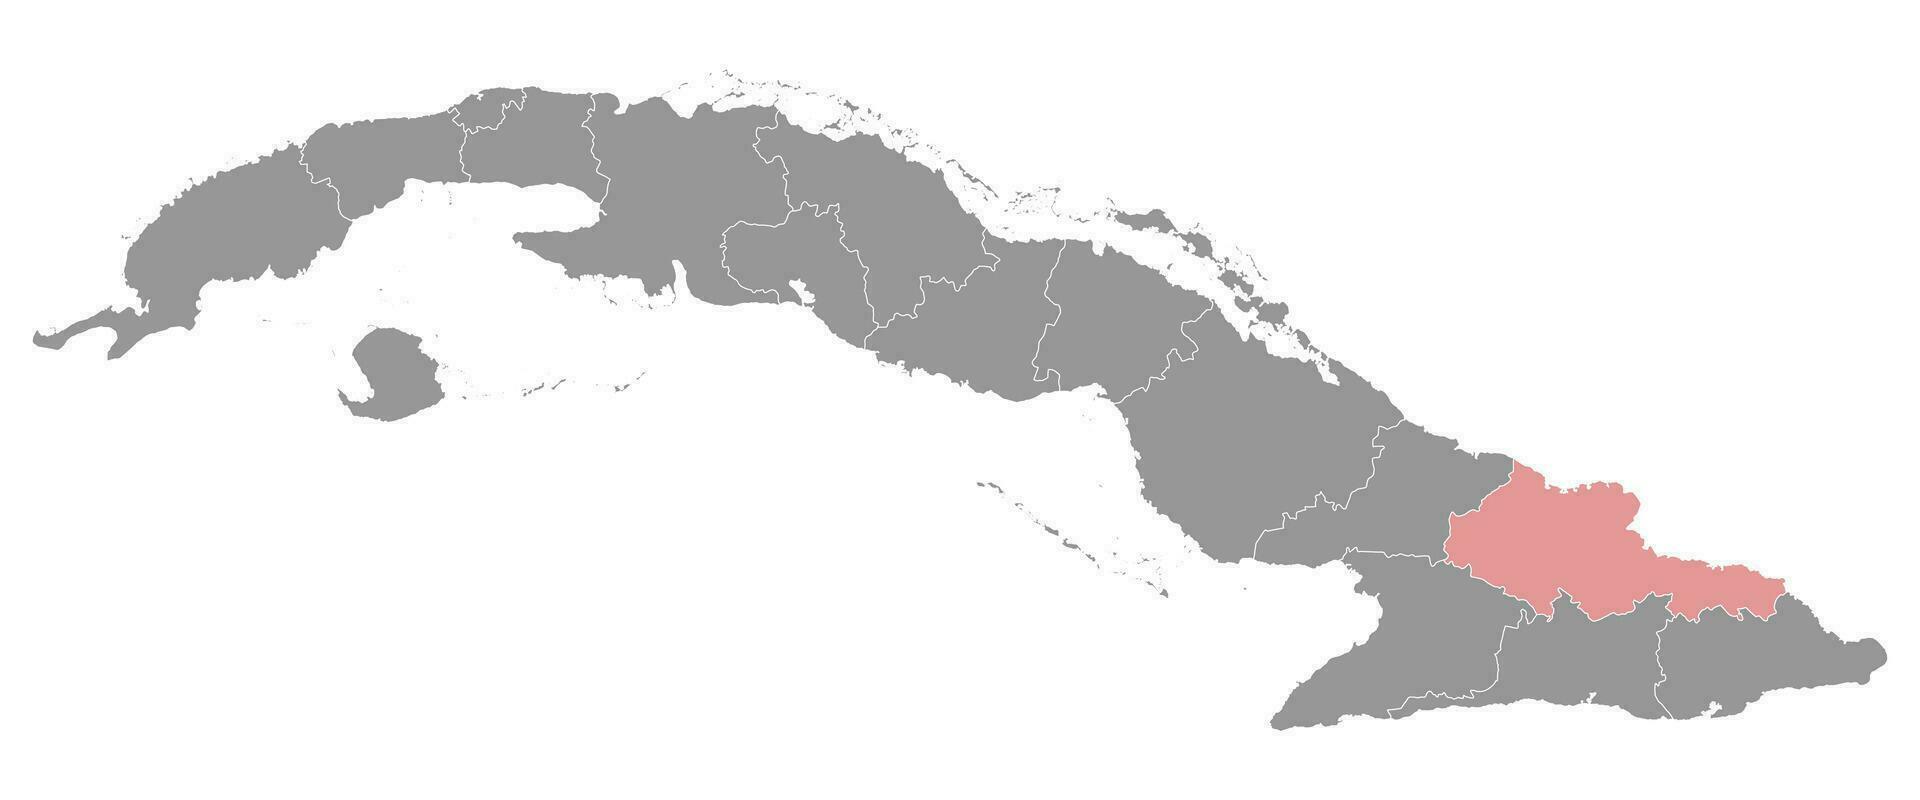 holguin provincia mapa, administrativo división de Cuba. vector ilustración.